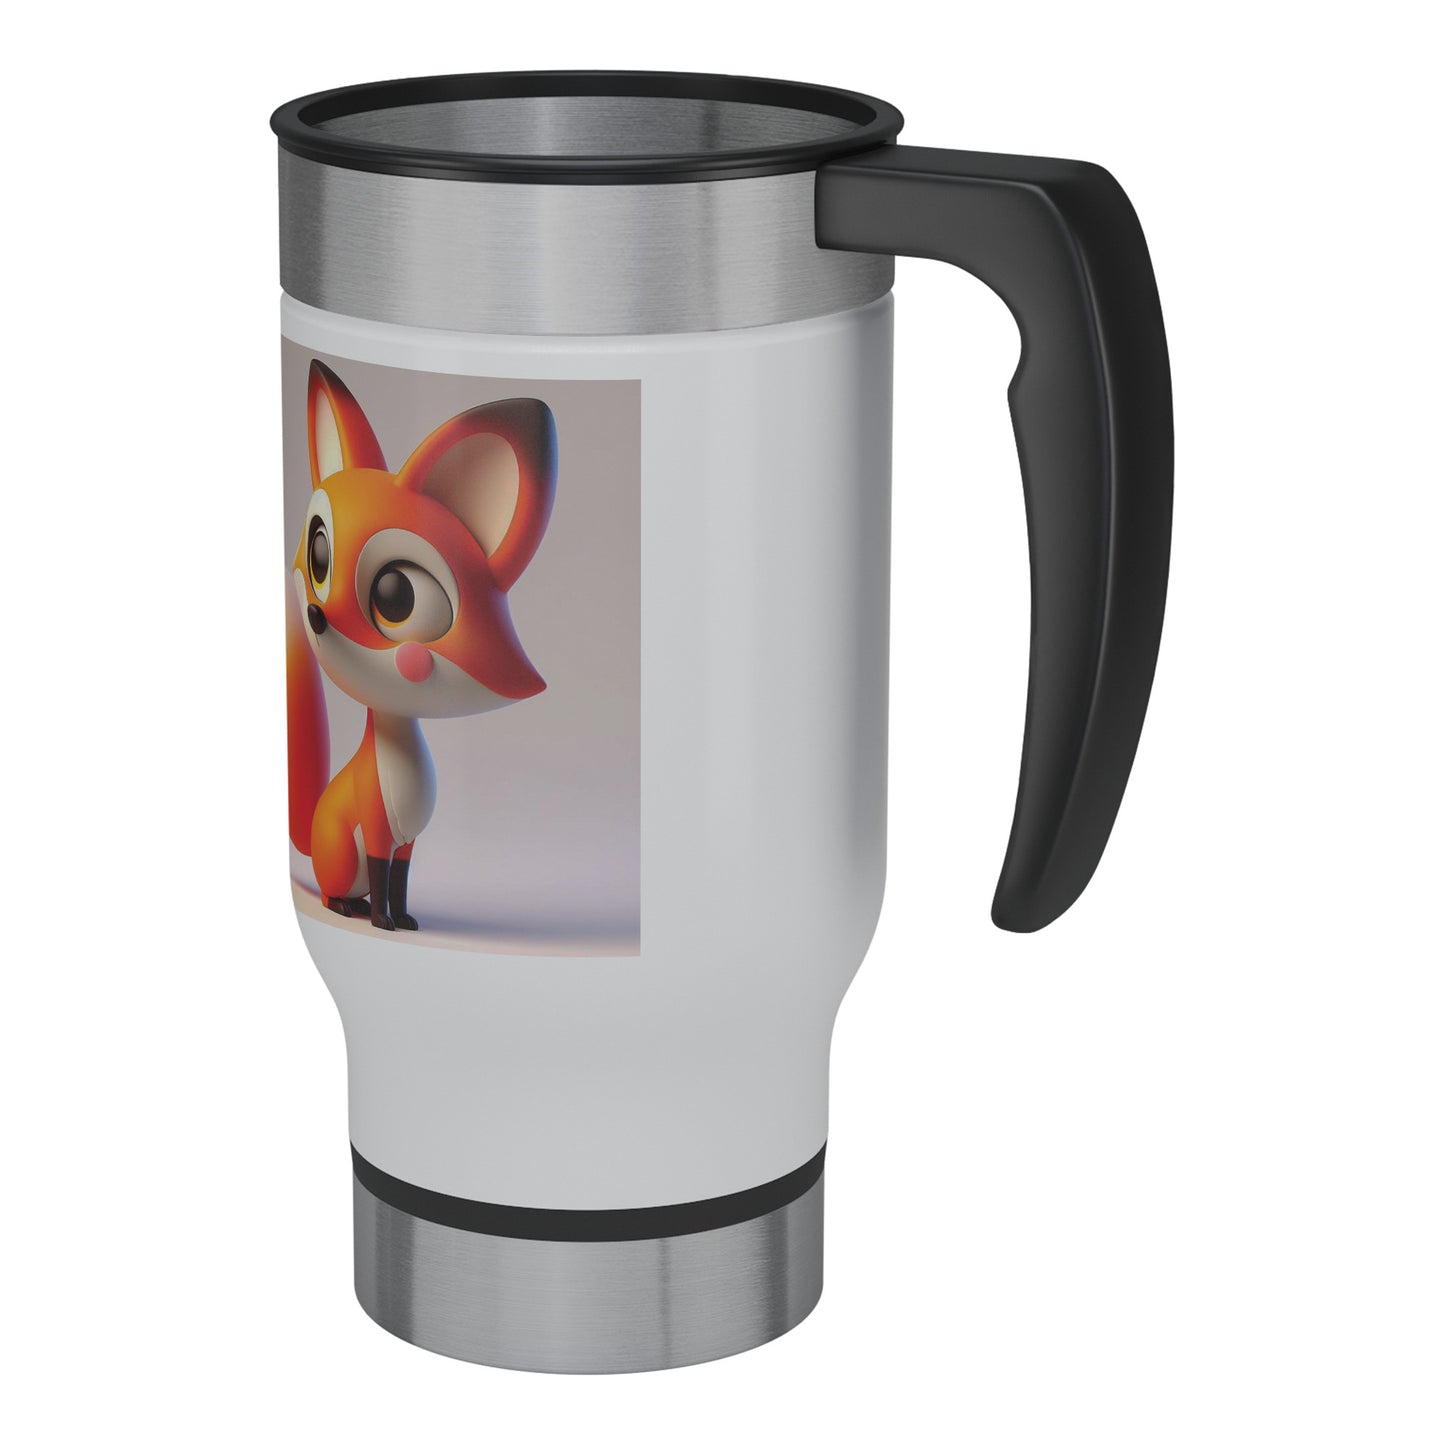 Cute & Adorable Mammals - 14oz Travel Mug - Fox #4